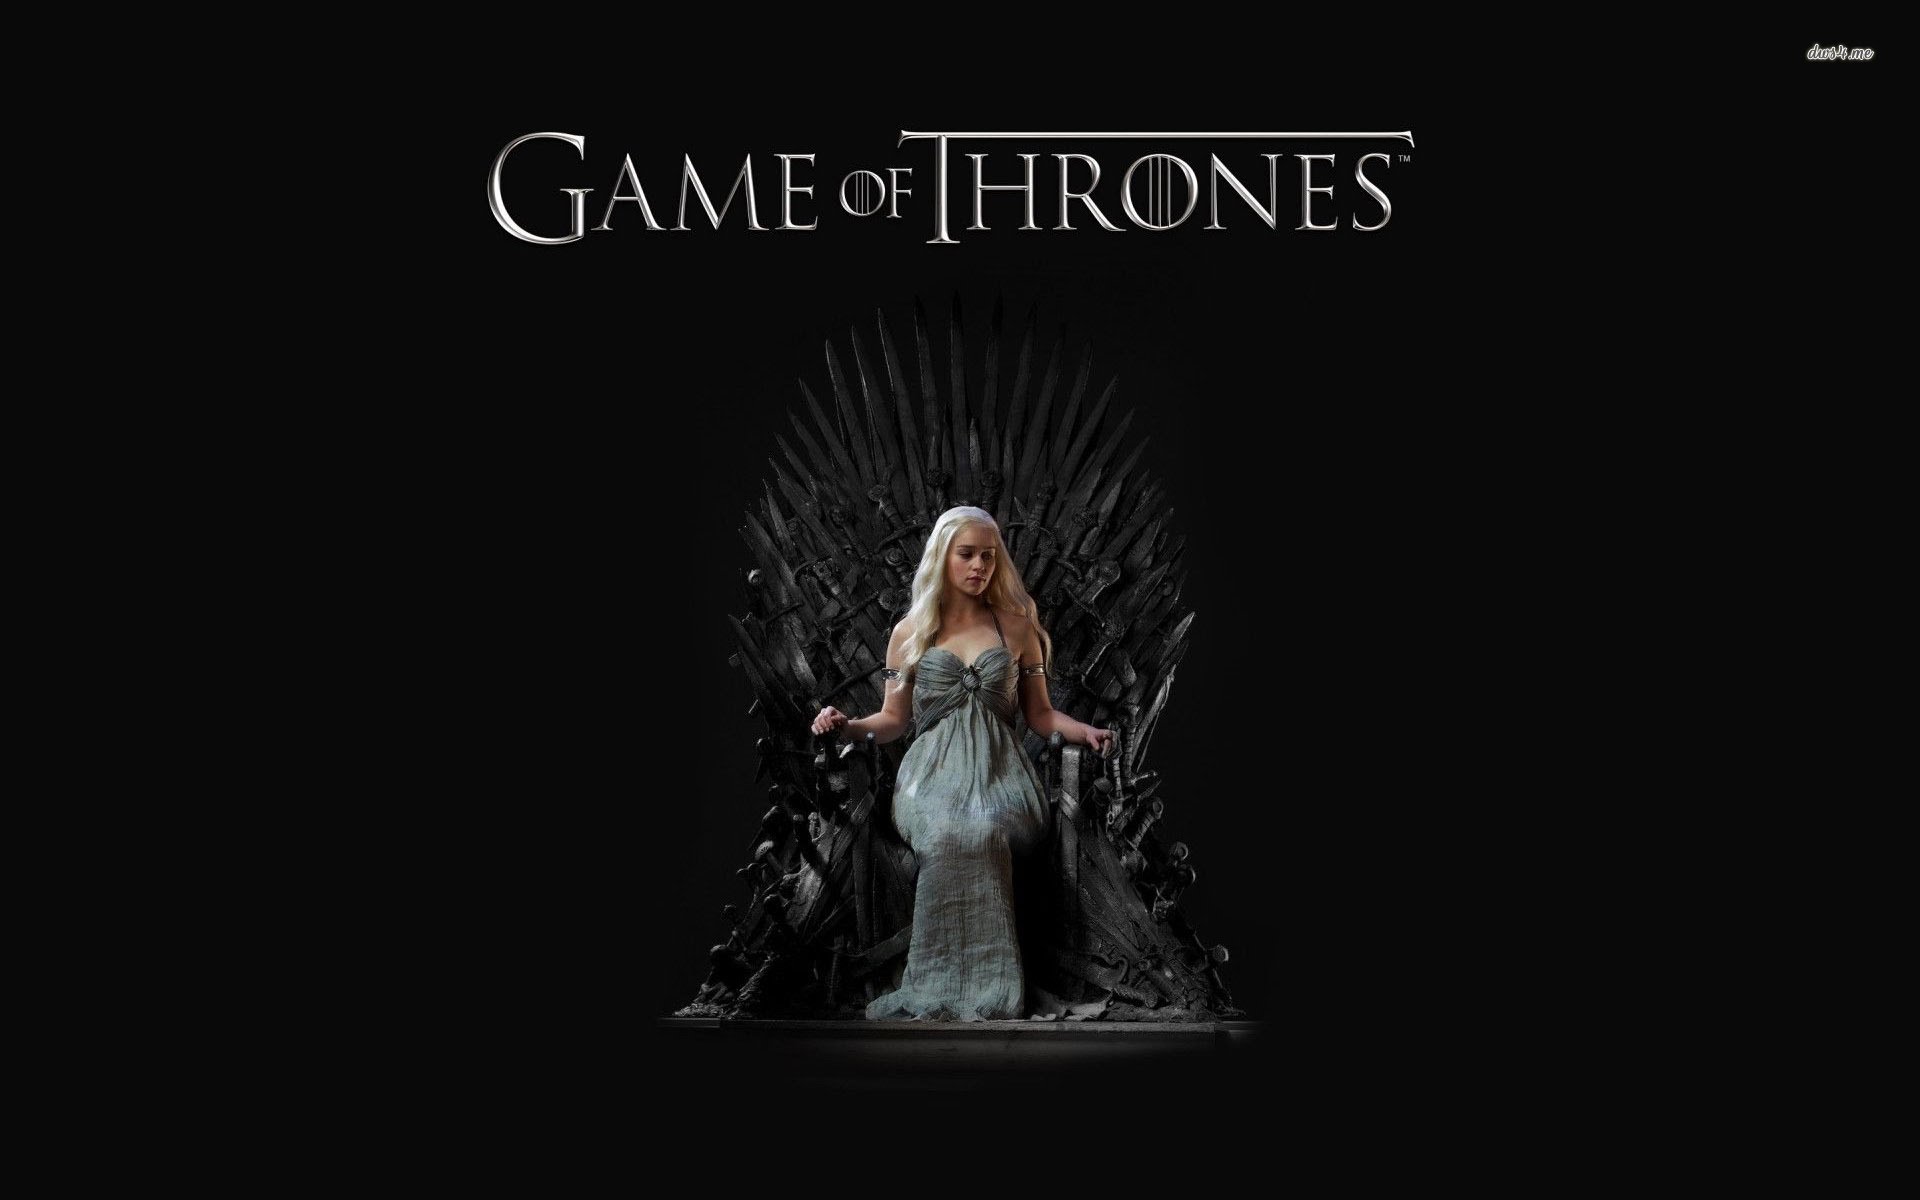  ‘Game of Thrones’ tendría solo 13 episodios más